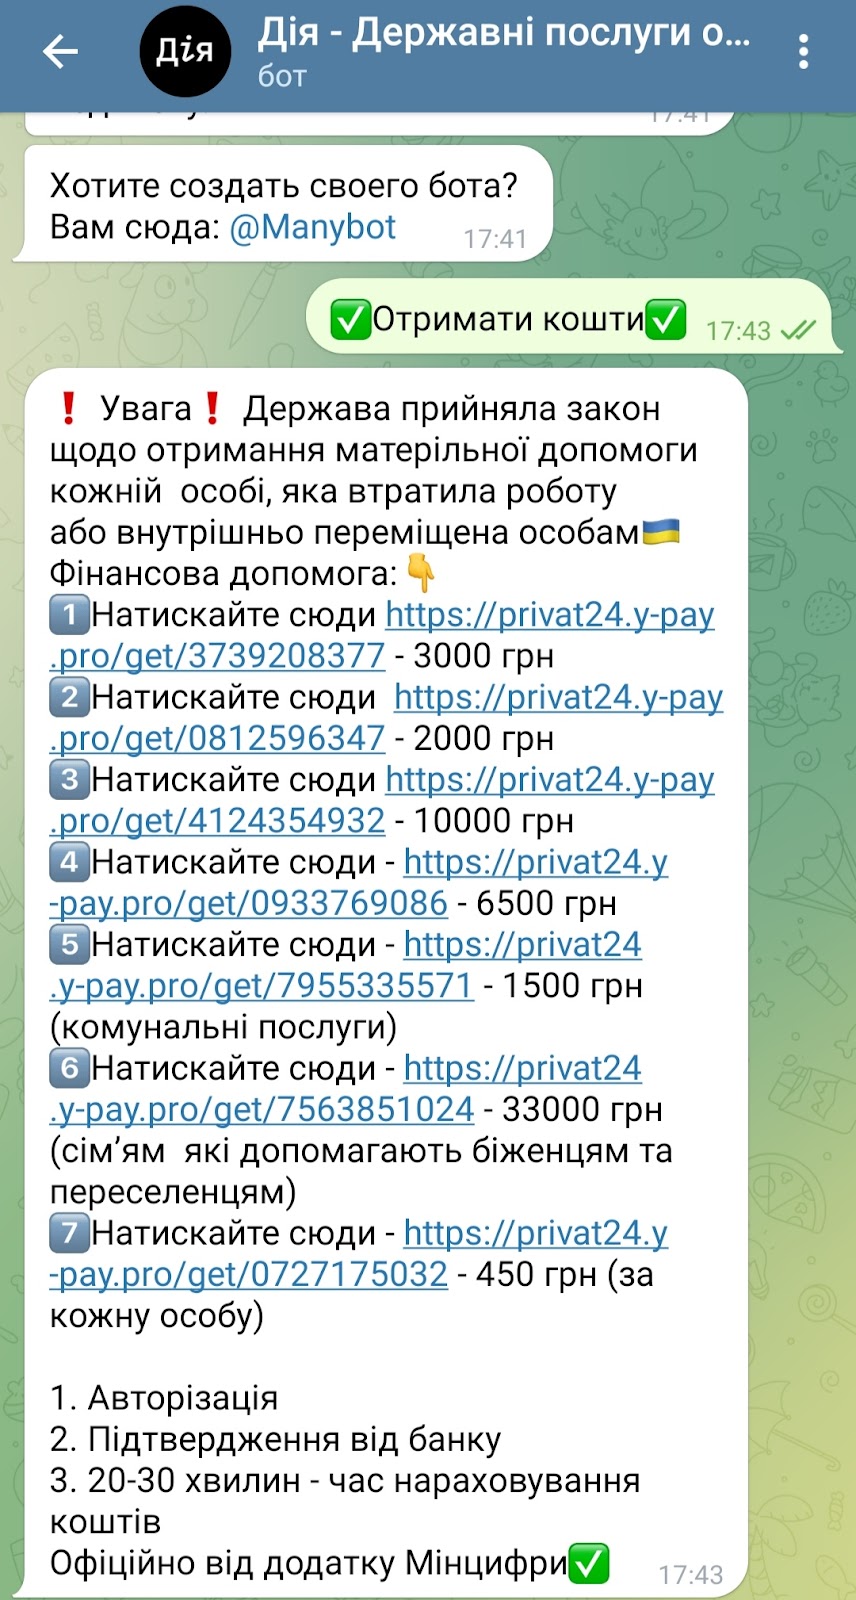 ПриватБанк предупредил клиентов о мошенниках: обманывают украинцев через приложение “Дия“